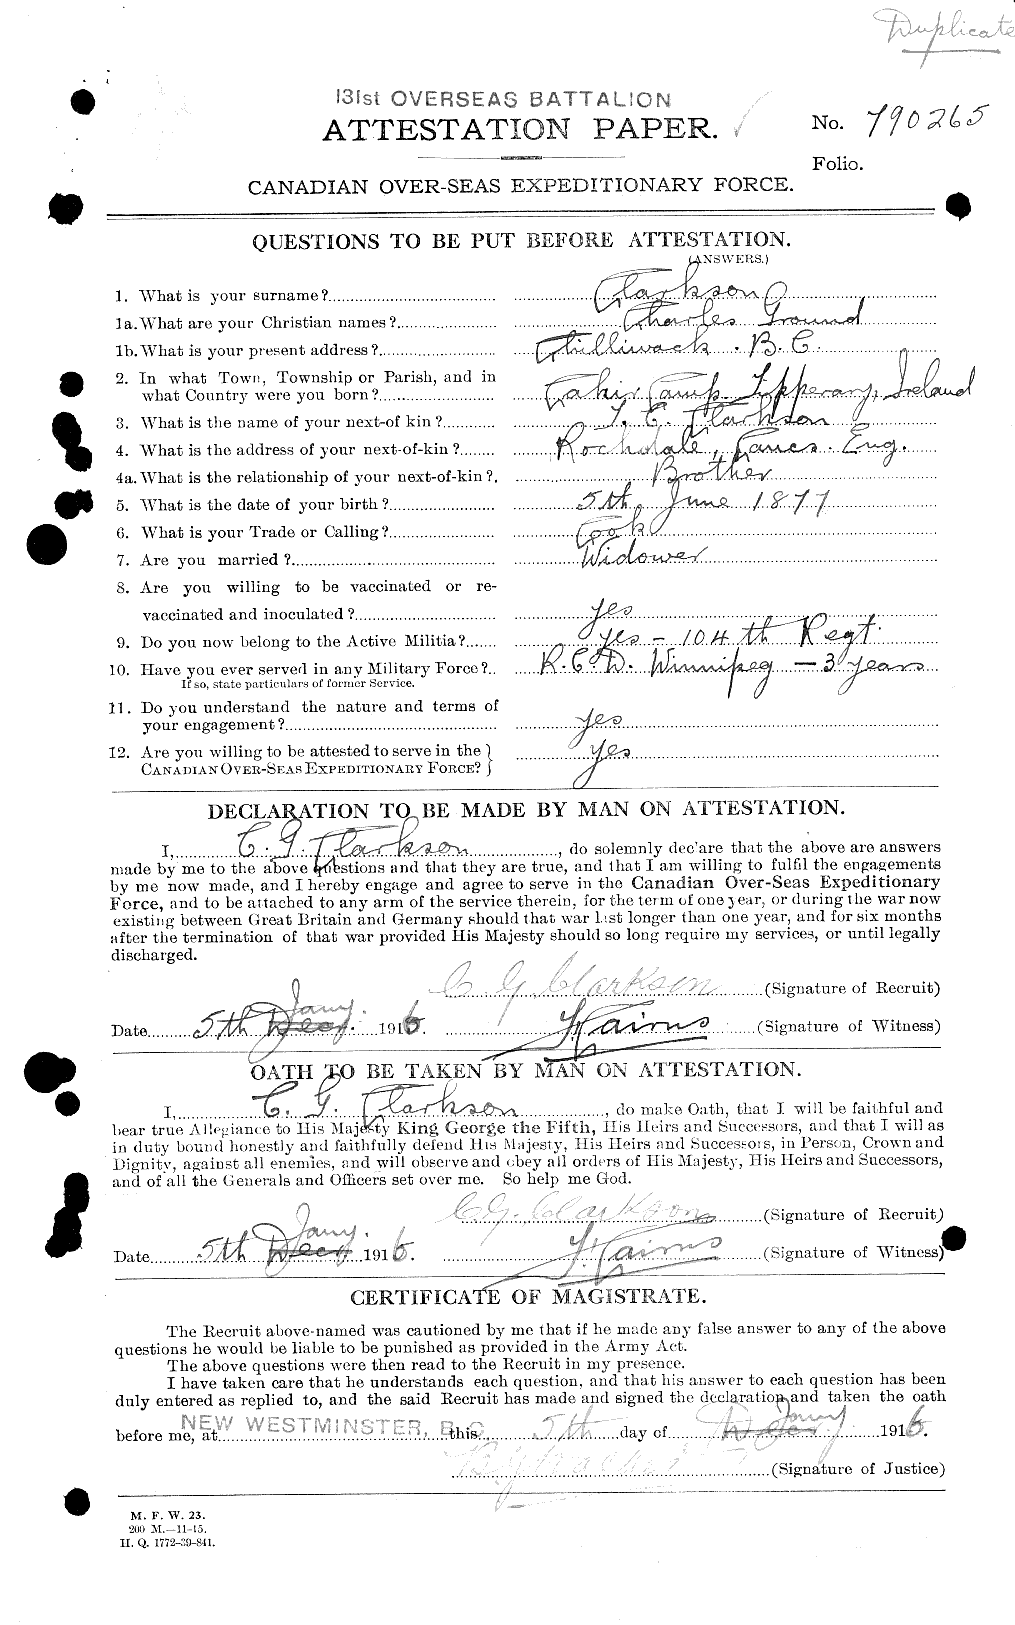 Dossiers du Personnel de la Première Guerre mondiale - CEC 023624a